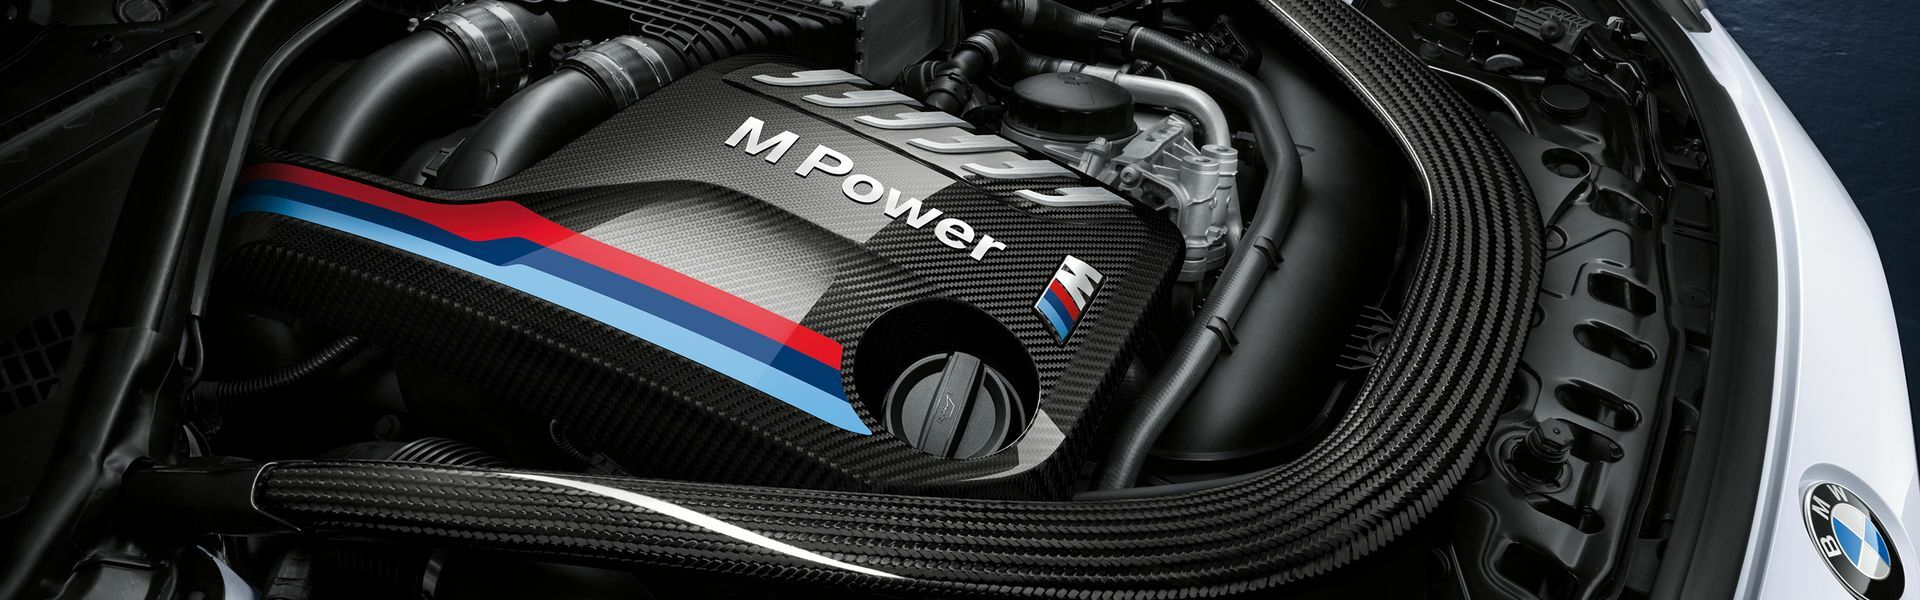 Zvýšení výkonu/ Softwarové úpravy/ Drobné performance díly pro automobil BMW M3 E90, E92, E93